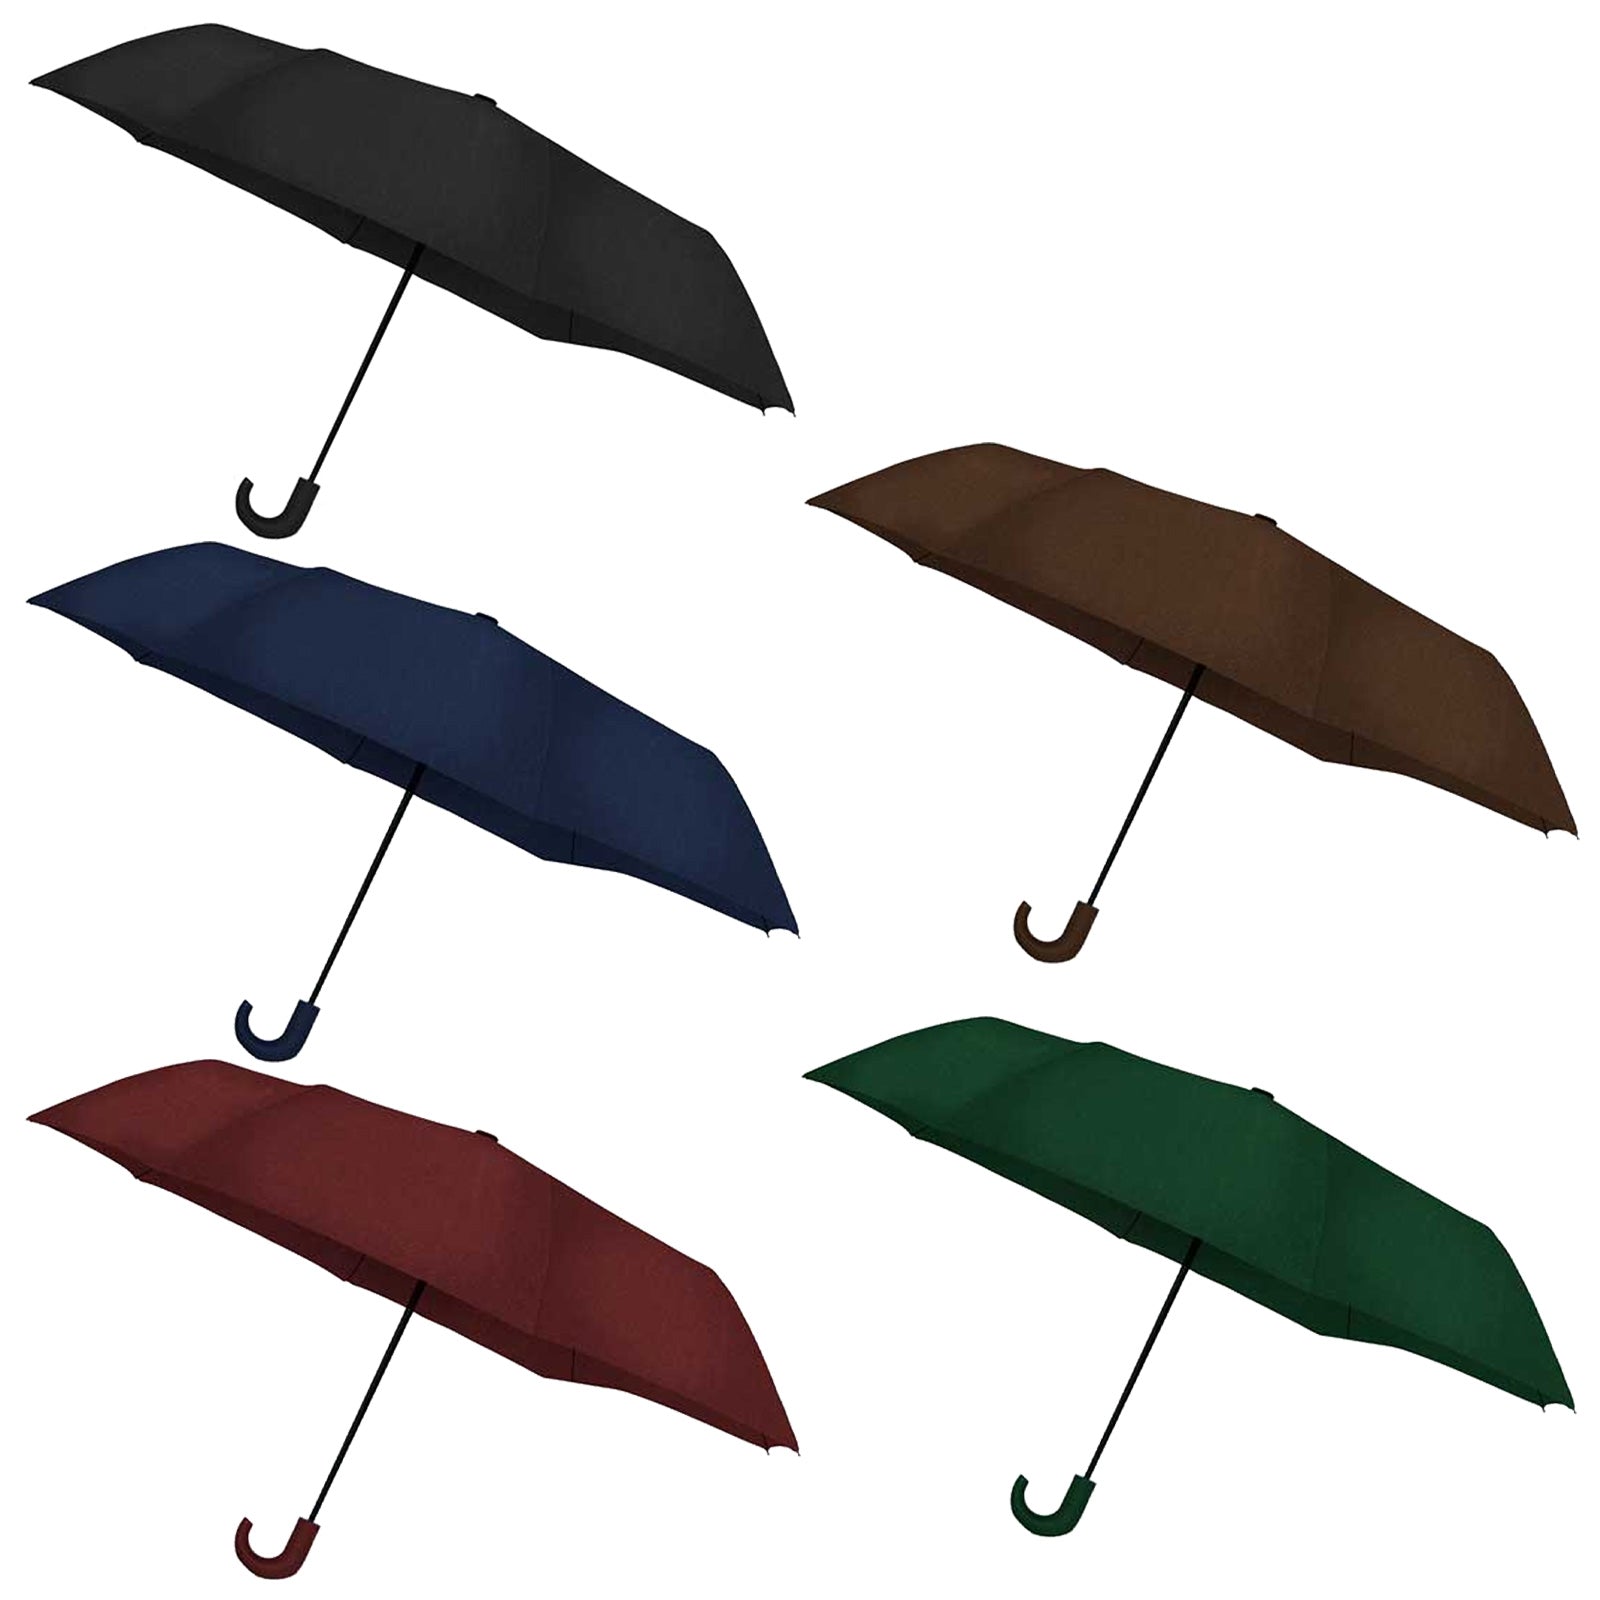 Rock N River Plain Compact Umbrella